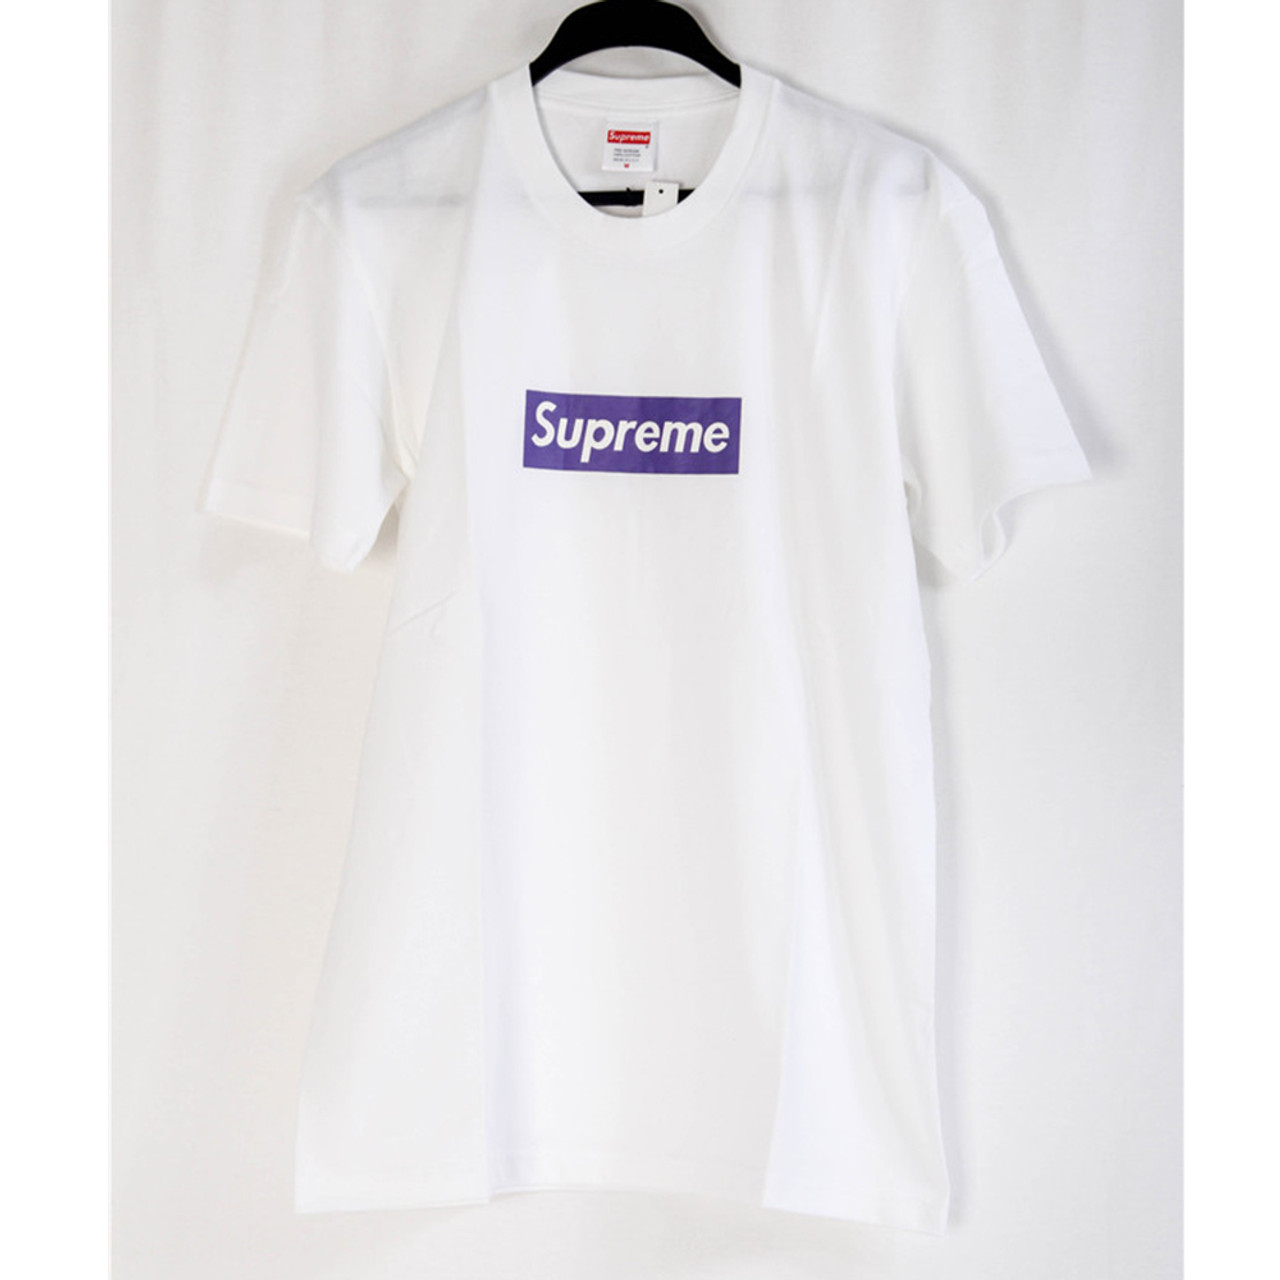 supreme t shirt quality